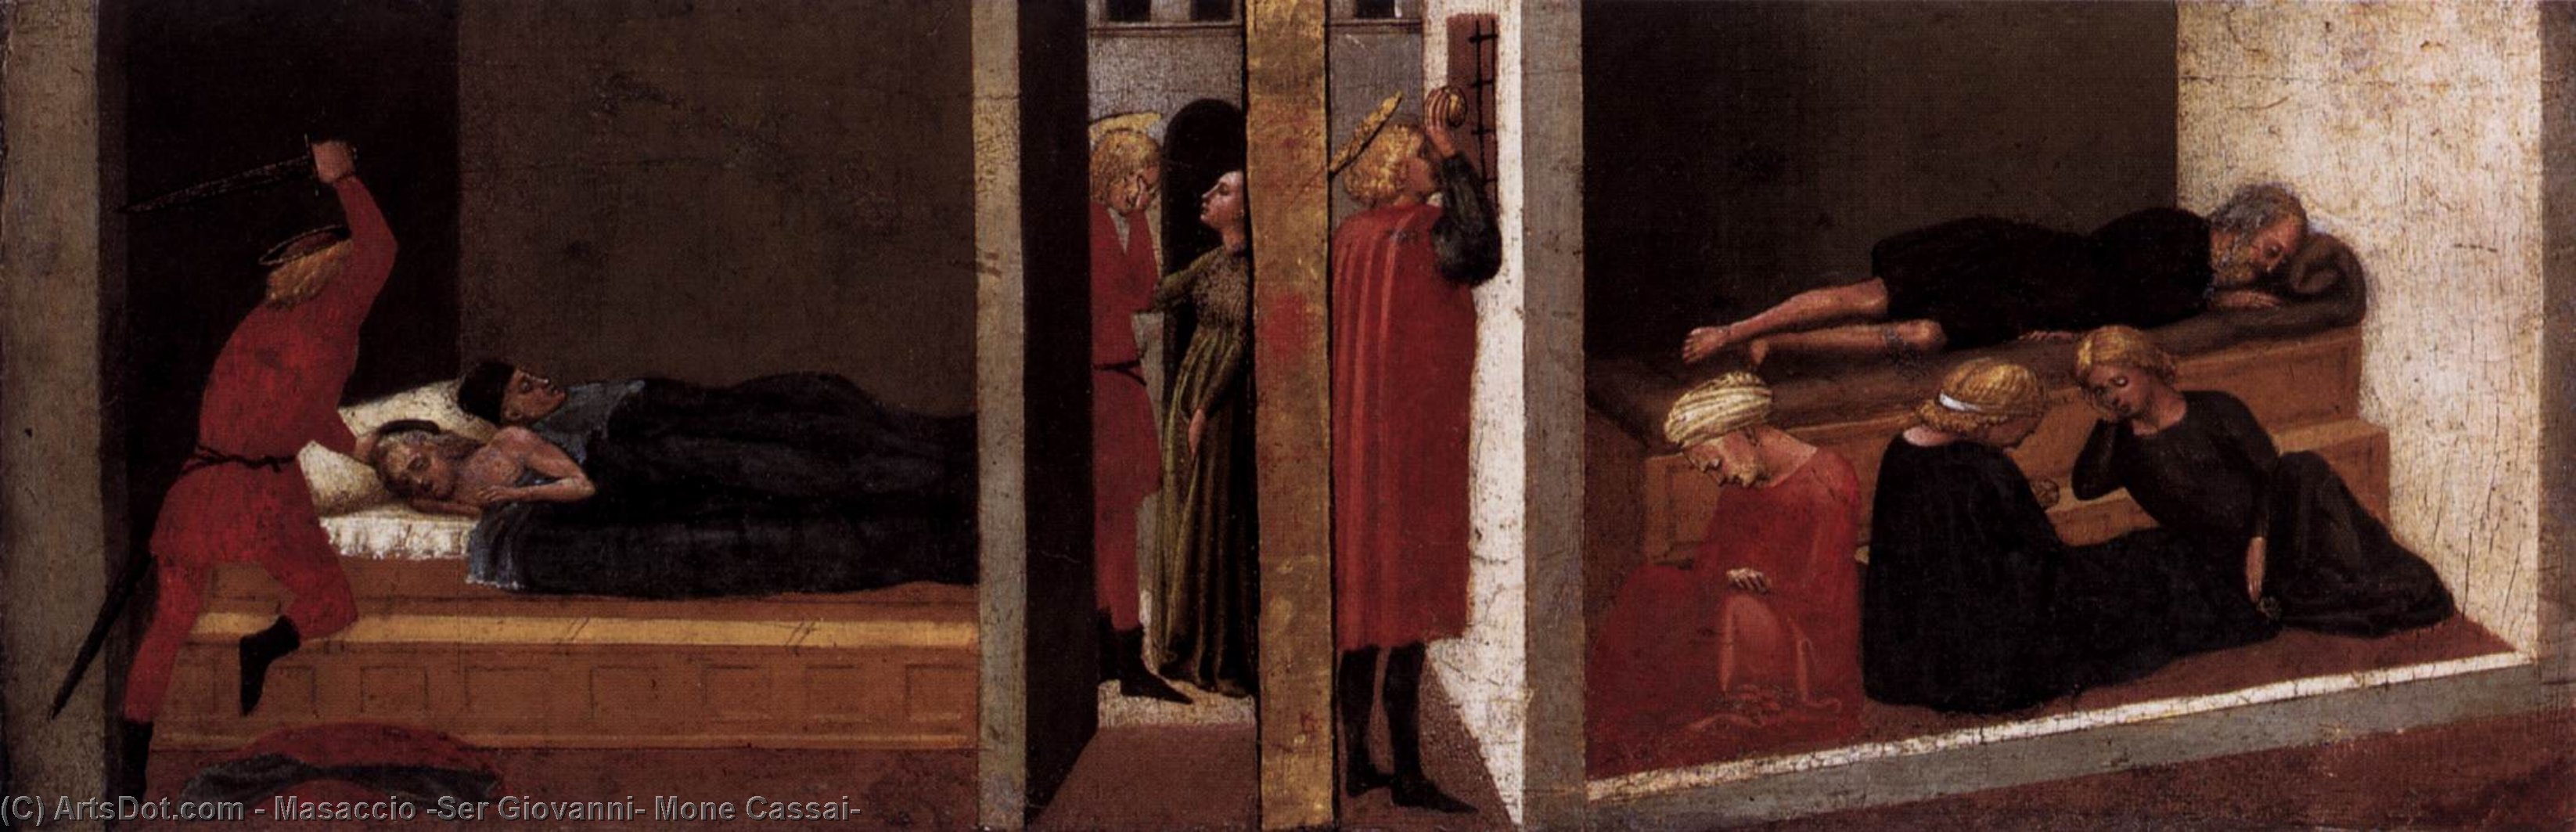 Wikioo.org - Bách khoa toàn thư về mỹ thuật - Vẽ tranh, Tác phẩm nghệ thuật Masaccio (Ser Giovanni, Mone Cassai) - Predella panel from the Pisa Altar